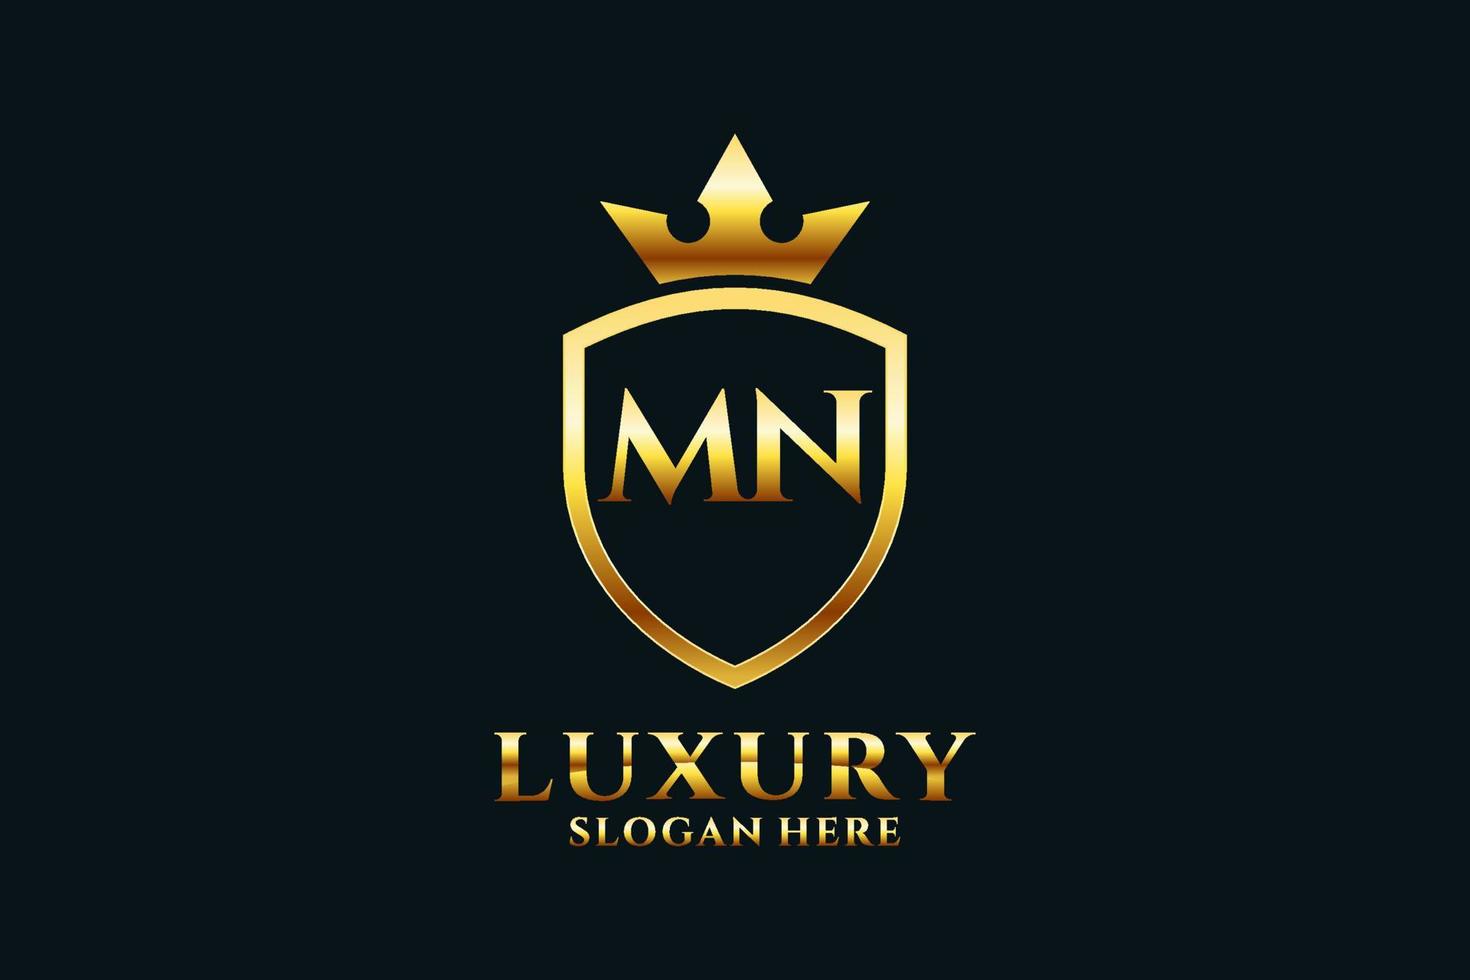 logotipo de monograma de luxo elegante inicial mn ou modelo de crachá com pergaminhos e coroa real - perfeito para projetos de marca luxuosos vetor